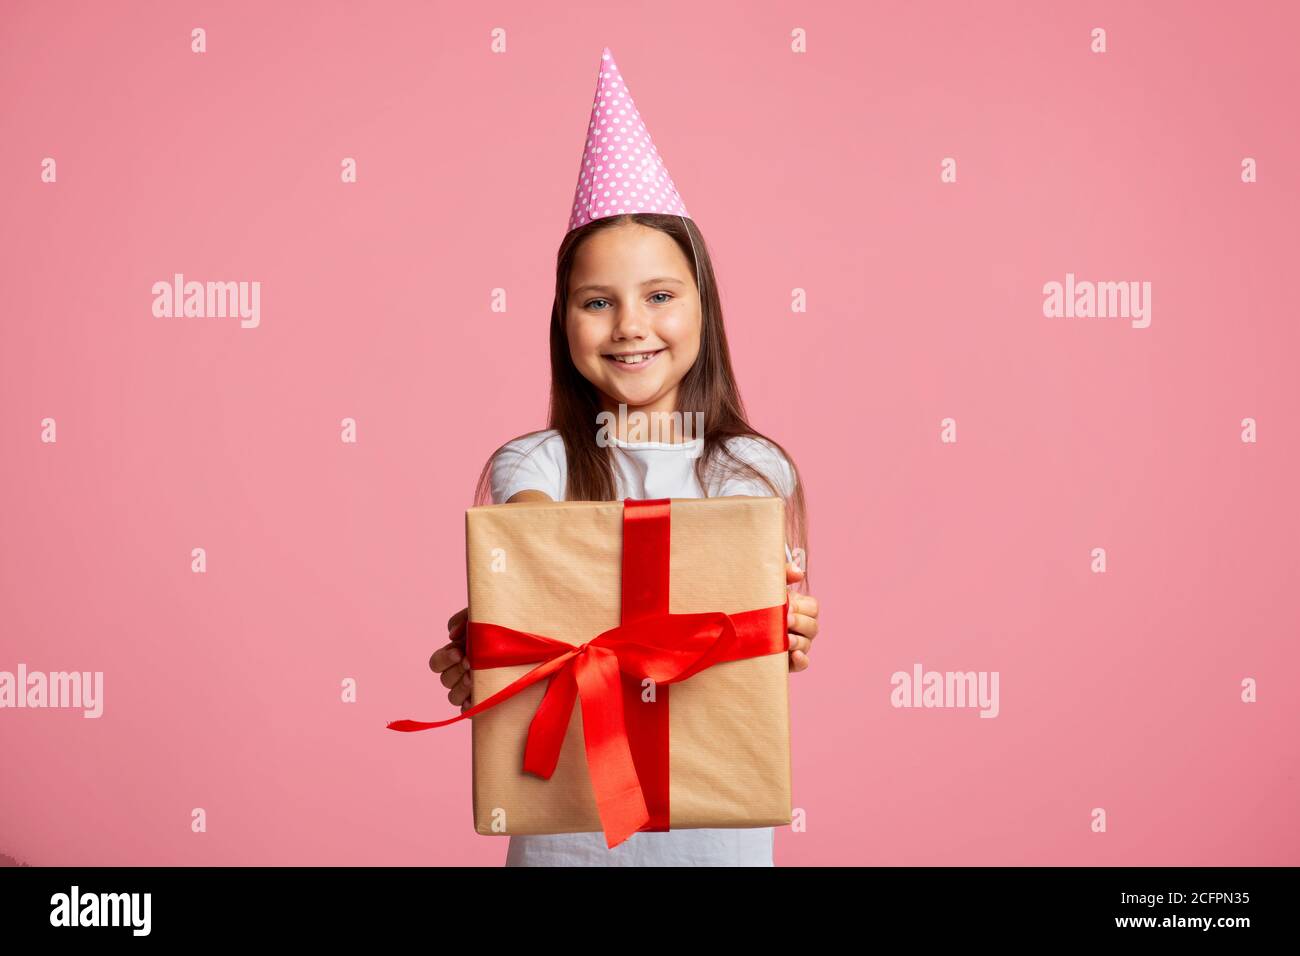 Geburtstagsgeschenk. Happy kleines Mädchen in Mütze mit Geschenkbox mit rotem Band Stockfoto